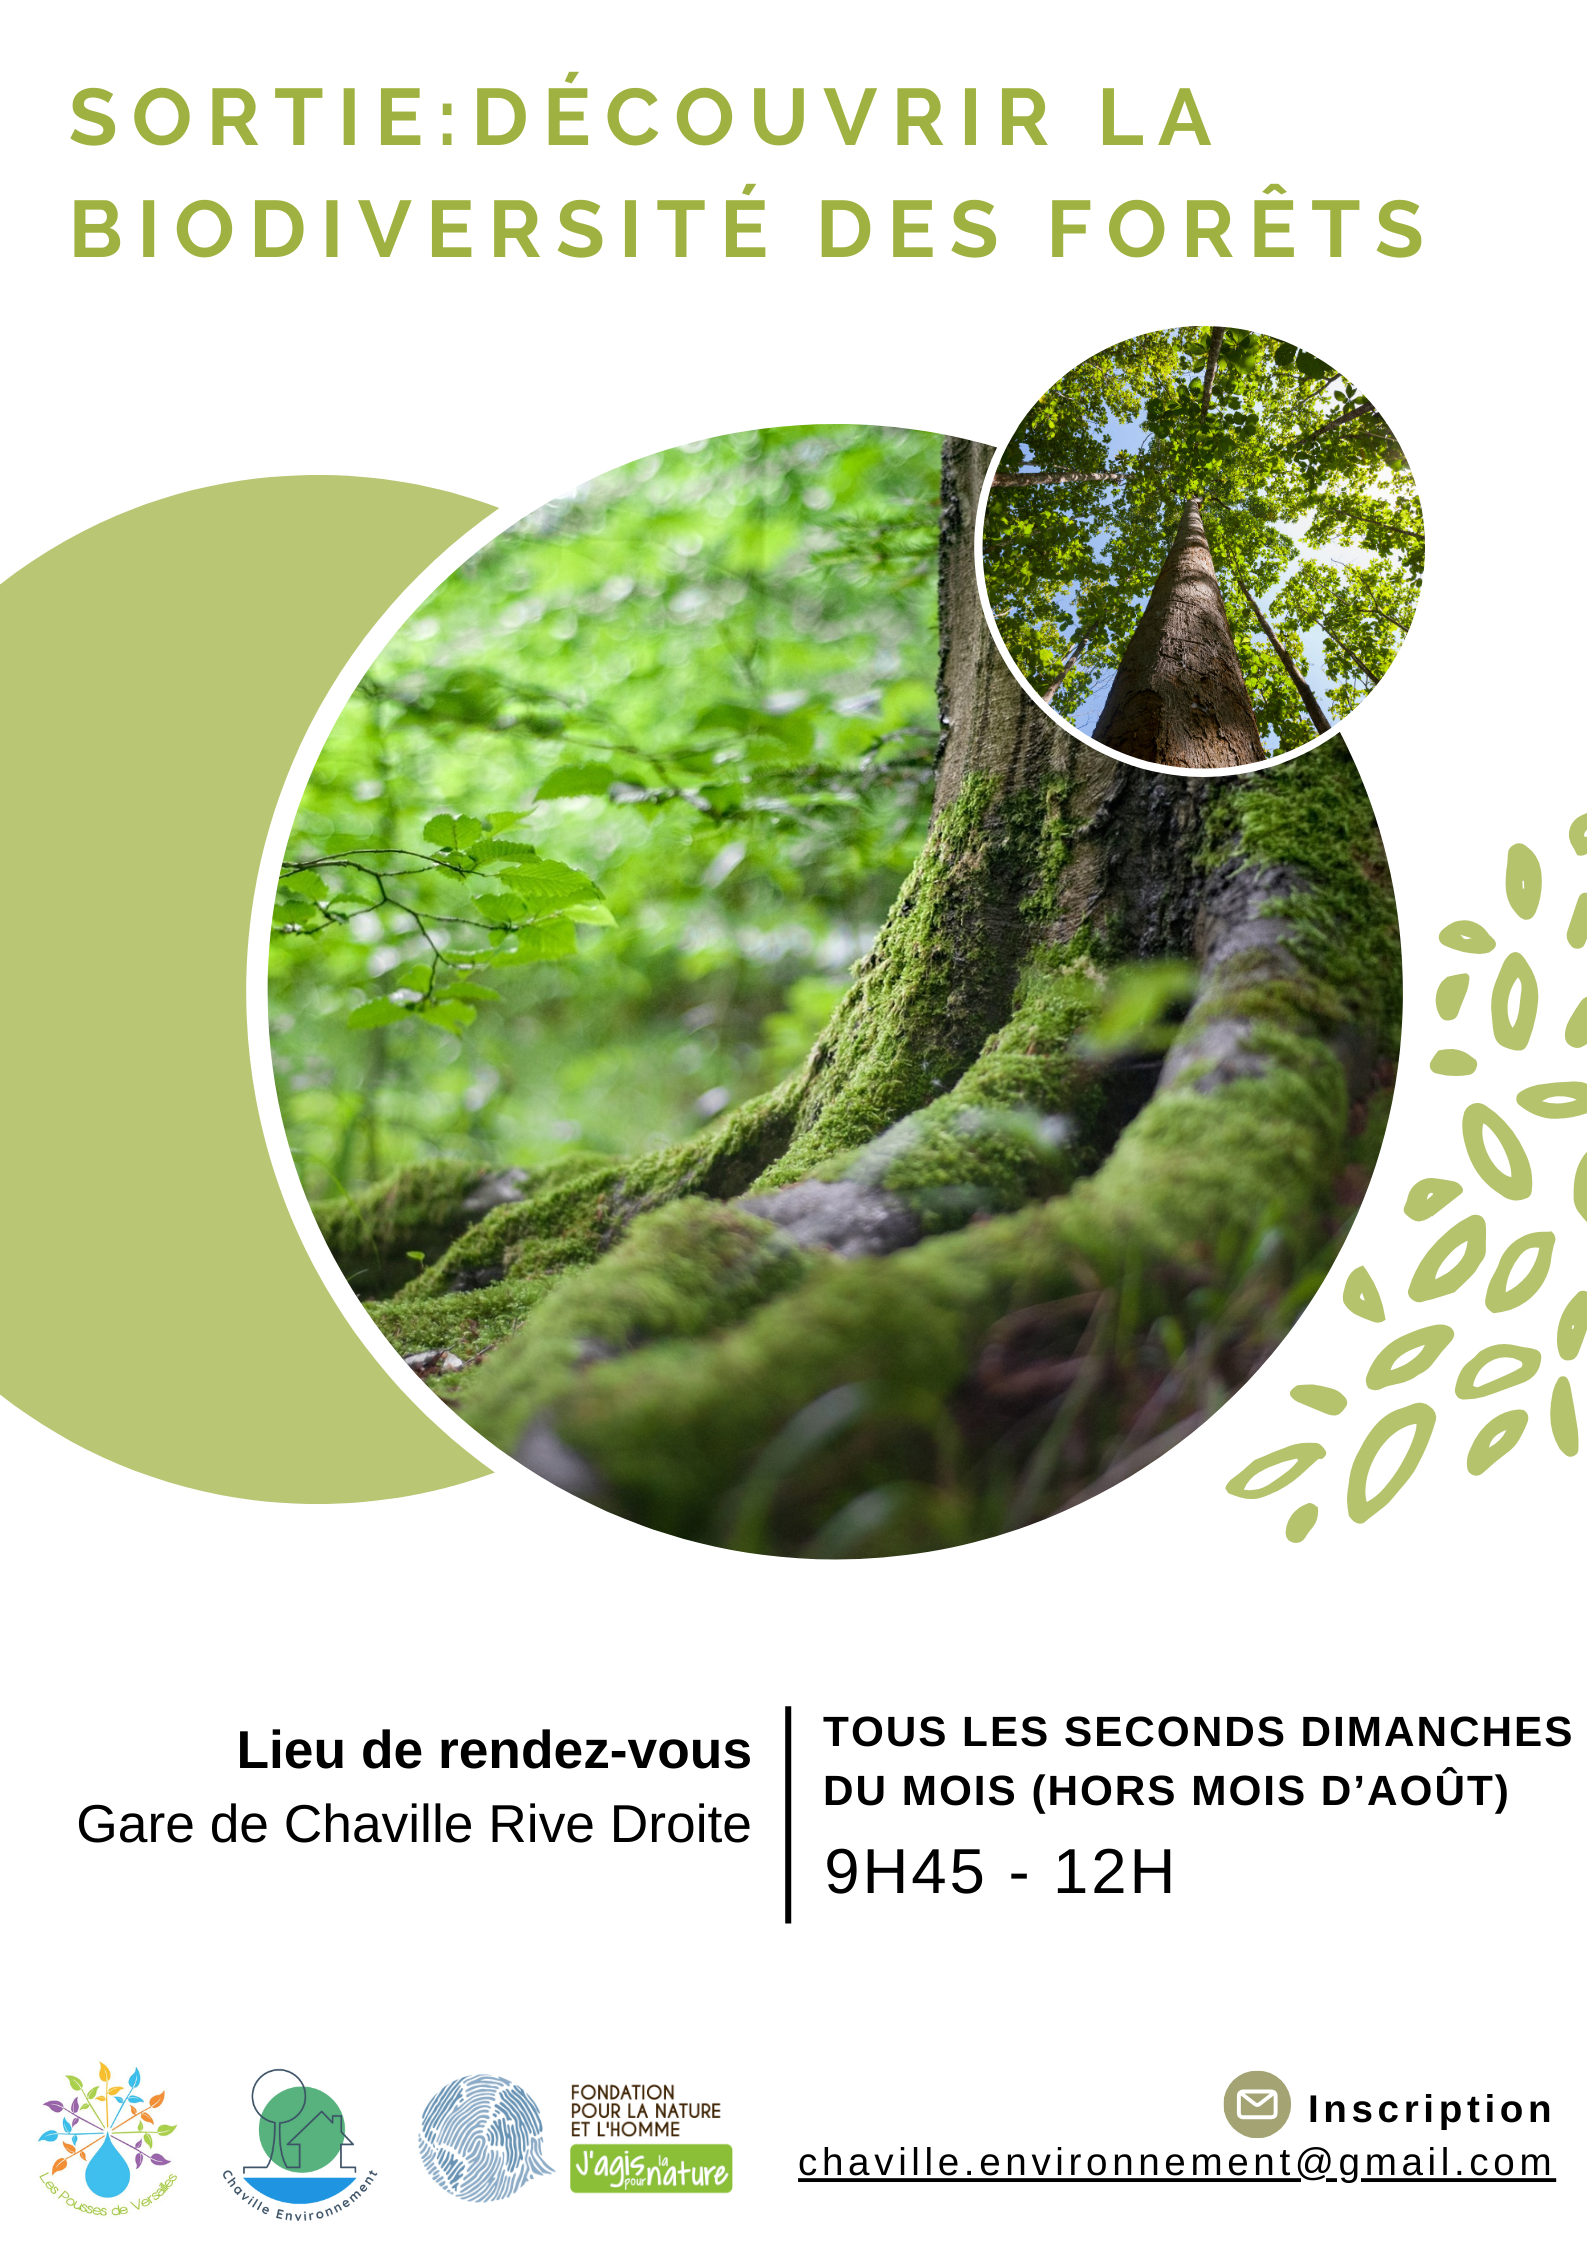 You are currently viewing SORTIE : Découvrir la biodiversité des forêts